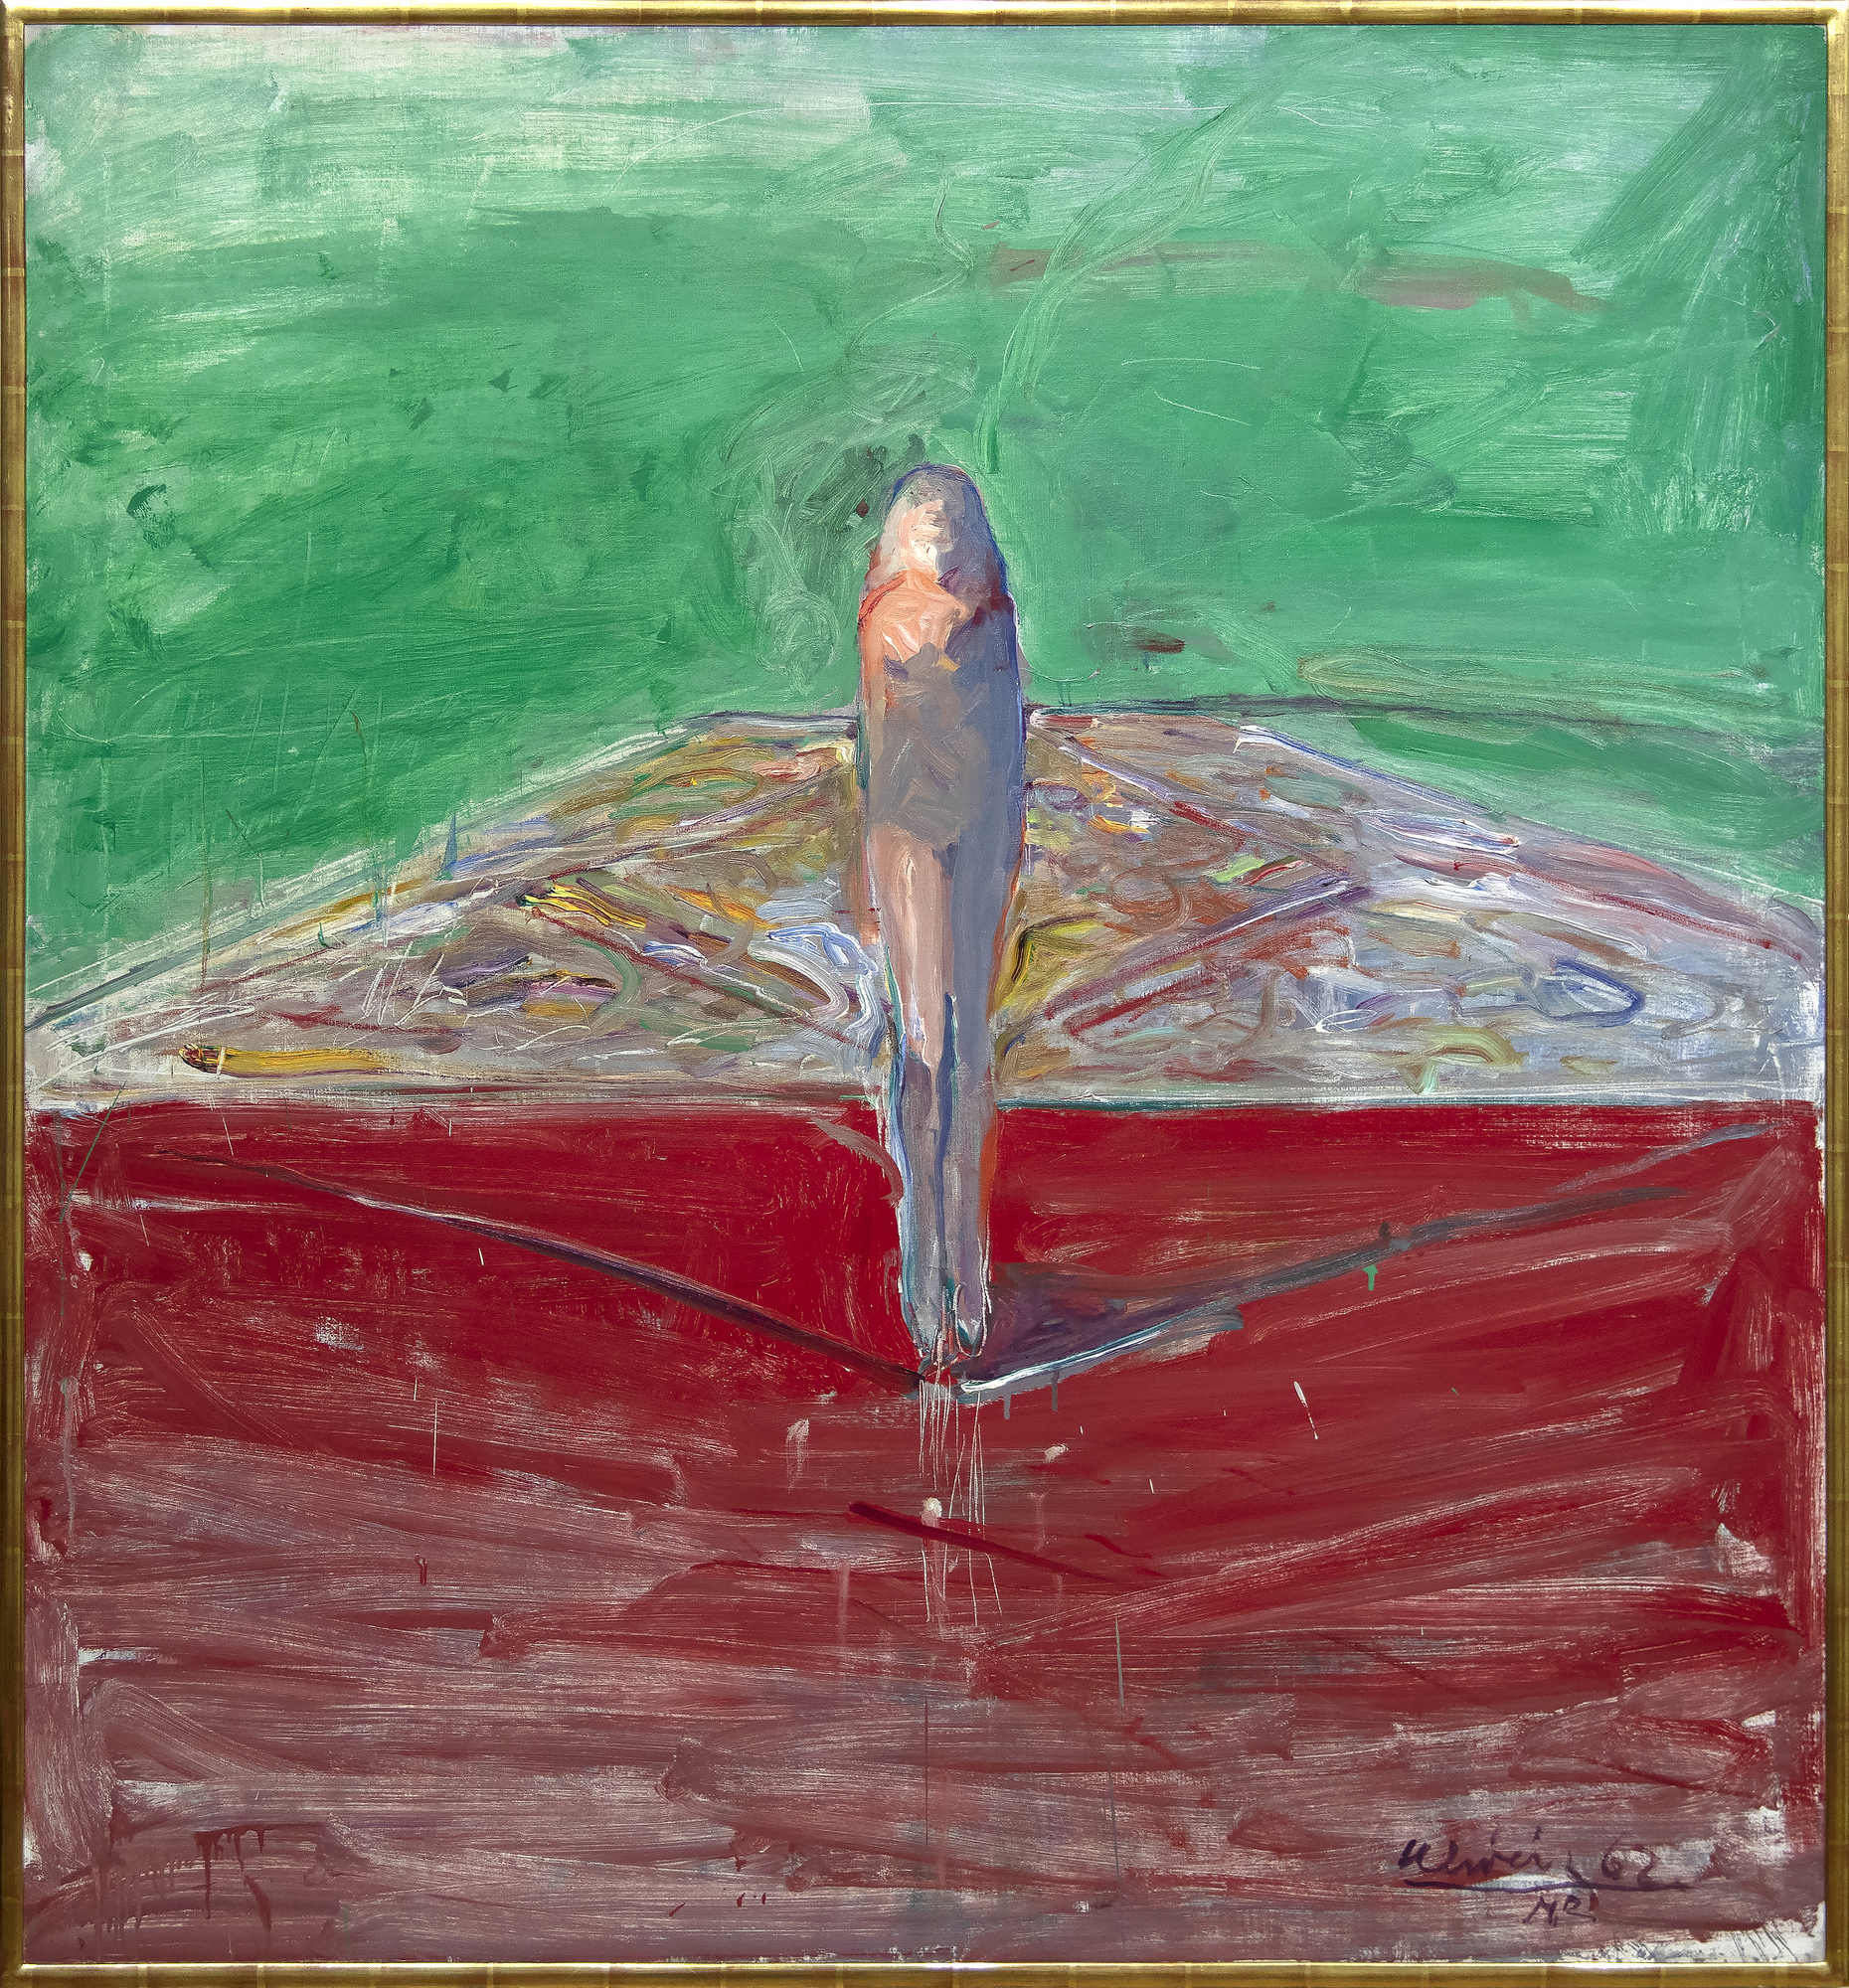 内森-奥利维拉经常与加利福尼亚湾区的具象画家联系在一起，但实际上，他的作品透露出他对威廉-德库宁、阿尔贝托-贾科梅蒂和弗朗西斯-培根的兴趣。这些影响是《从地毯上走下来的裸体》的显著特点。这幅画是奥利维拉 30 岁出头时画的，正是这种画奠定了他早期的声誉，他以即兴的风格描绘了令人魂牵梦萦的孤立人物。奥利维拉晚期的作品反映了德库宁关于绘画视觉记忆的挑战和创造具有微弱存在感的人物形象的有影响力的评论，然而，强烈的地平线为这幅风景画奠定了基础，使人物形象比往常更有肉体存在感。